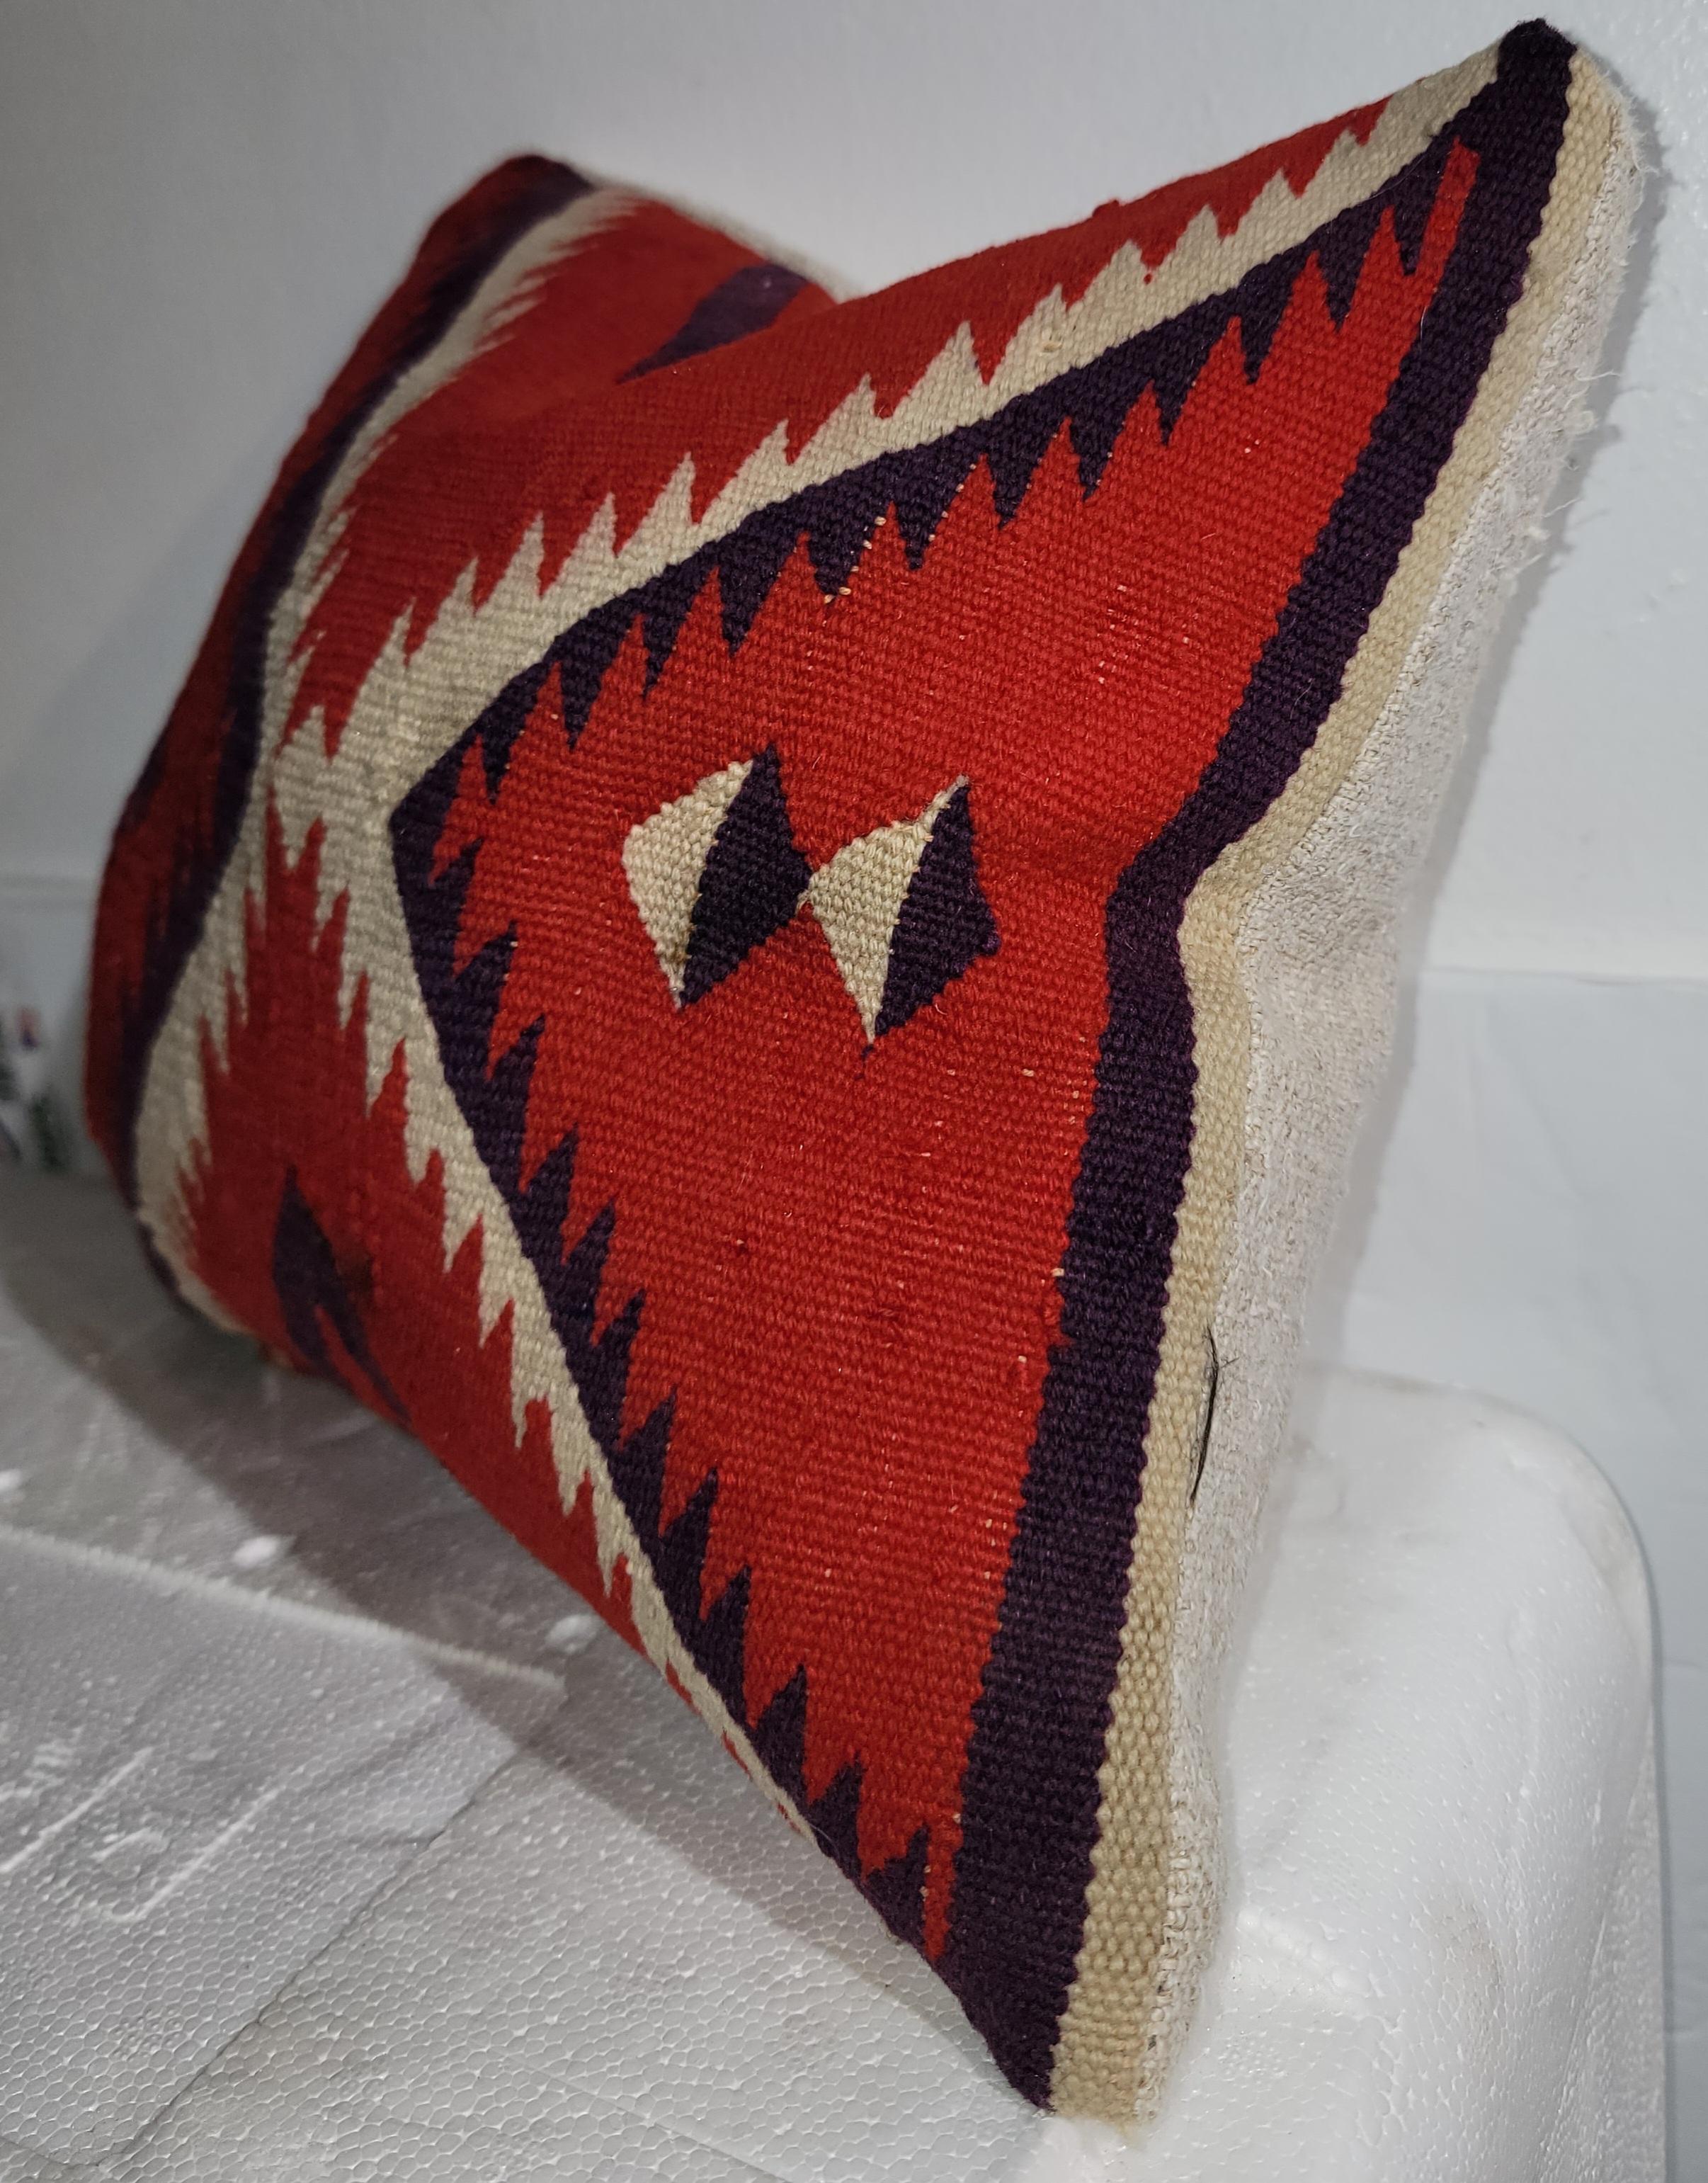 Navajo Deep Red Double Eye Dazzler Pillow Sampler.

Dieses Kissen wurde aus einem größeren Doppelaugen-Kissen hergestellt. Das bläulich-weiße Puzzlemuster fließt durch die Mitte des Kissens, wobei sich die Ecken in einem einzigen Punkt in der Mitte